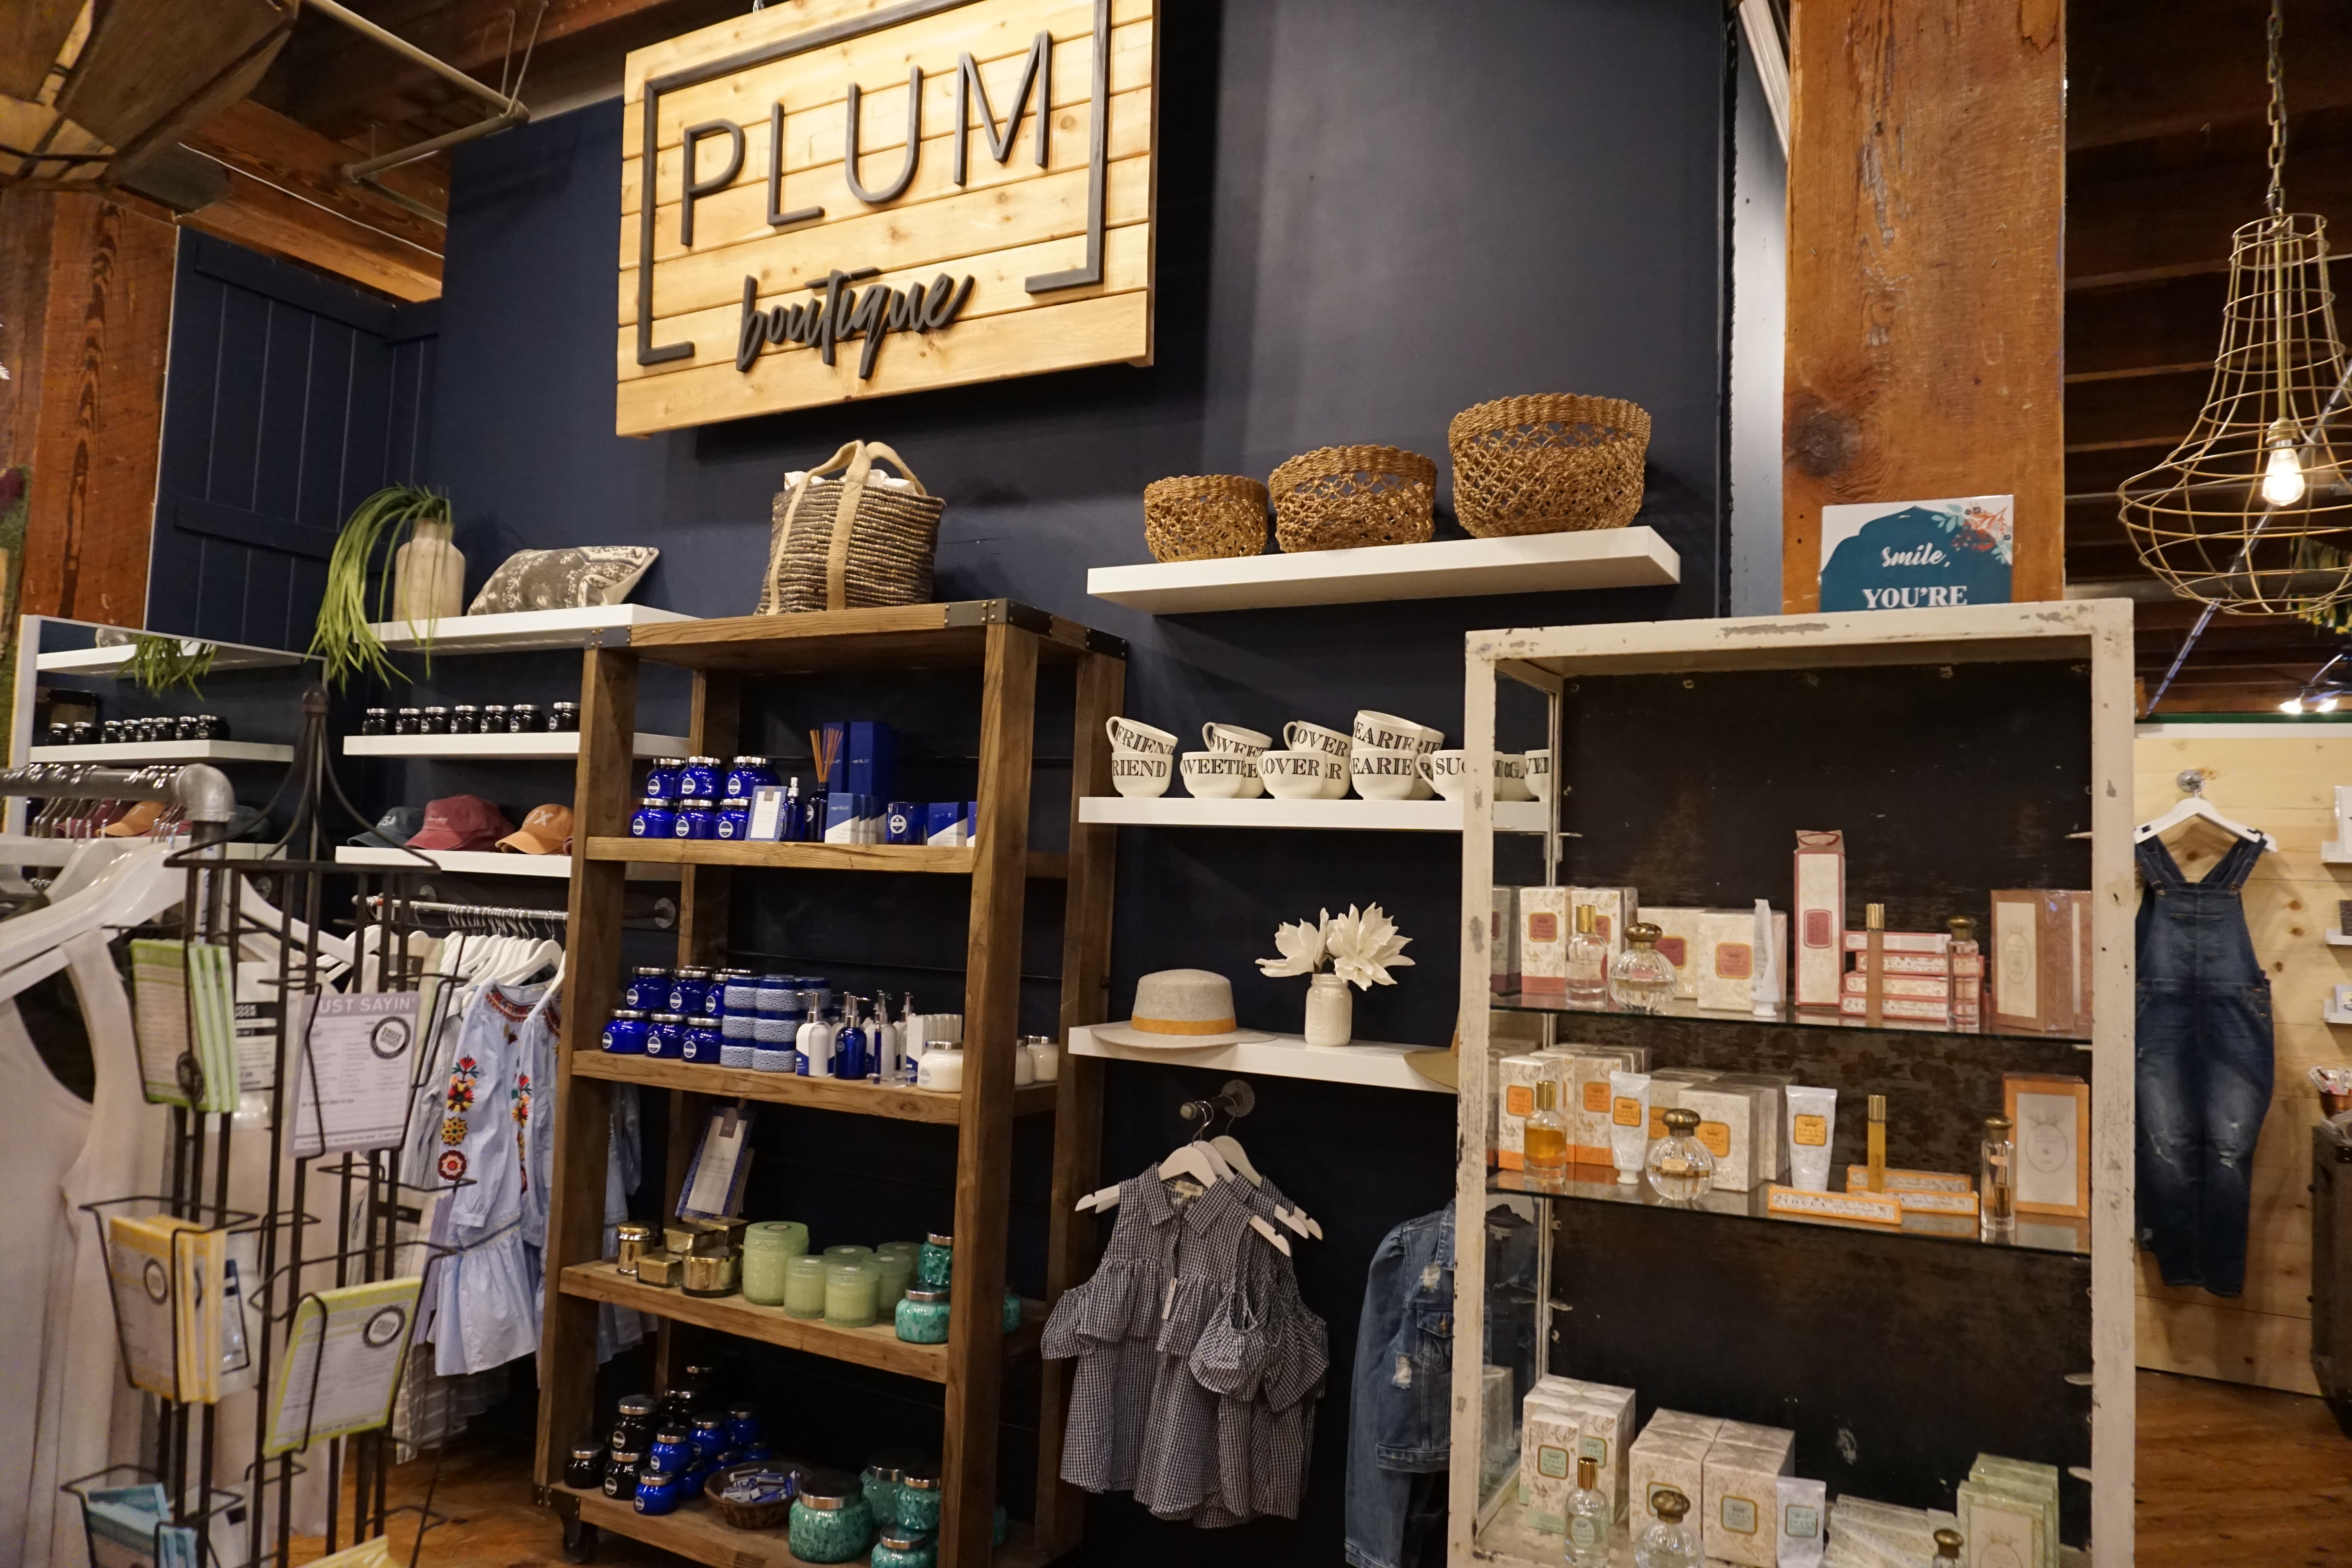 Plum Boutique - Plumtique - Spice Village - Waco, TX - Addie, Old World New